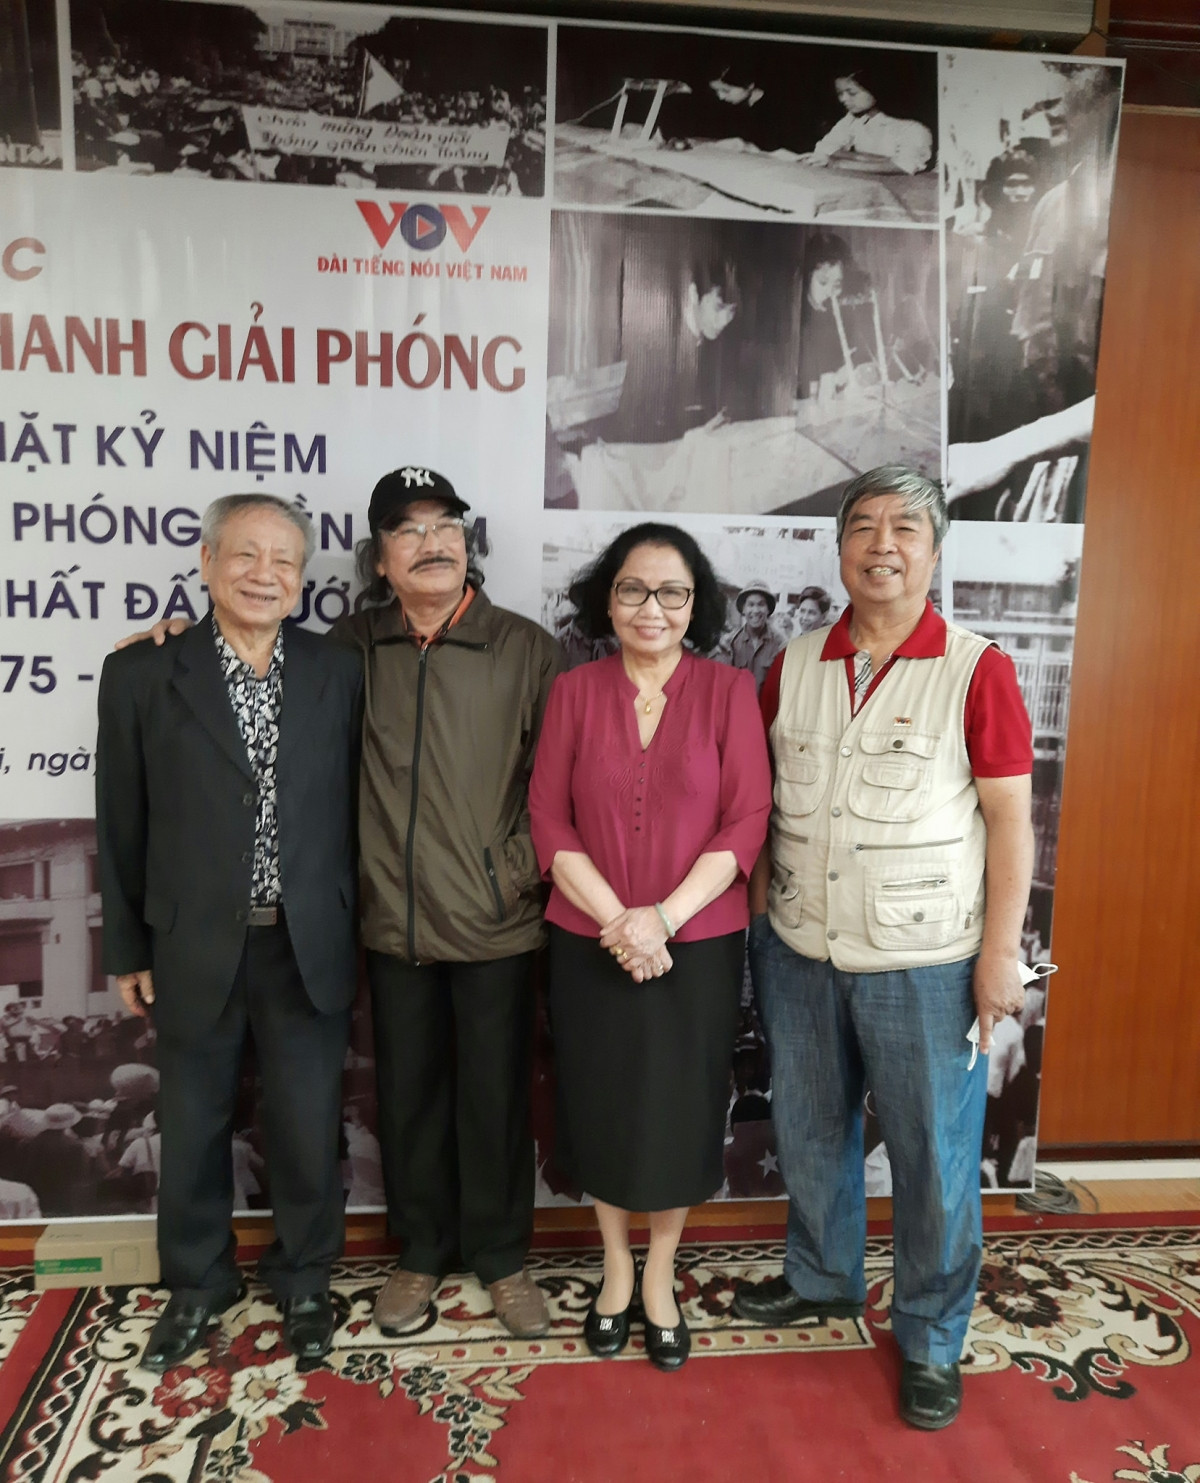 Ba người làm chương trình 30/4/75 là các nhà báo Trần Đức Nuôi (ảnh trái), Nguyễn Thị Kim Cúc và Trương Cộng Hòa (ảnh phải).